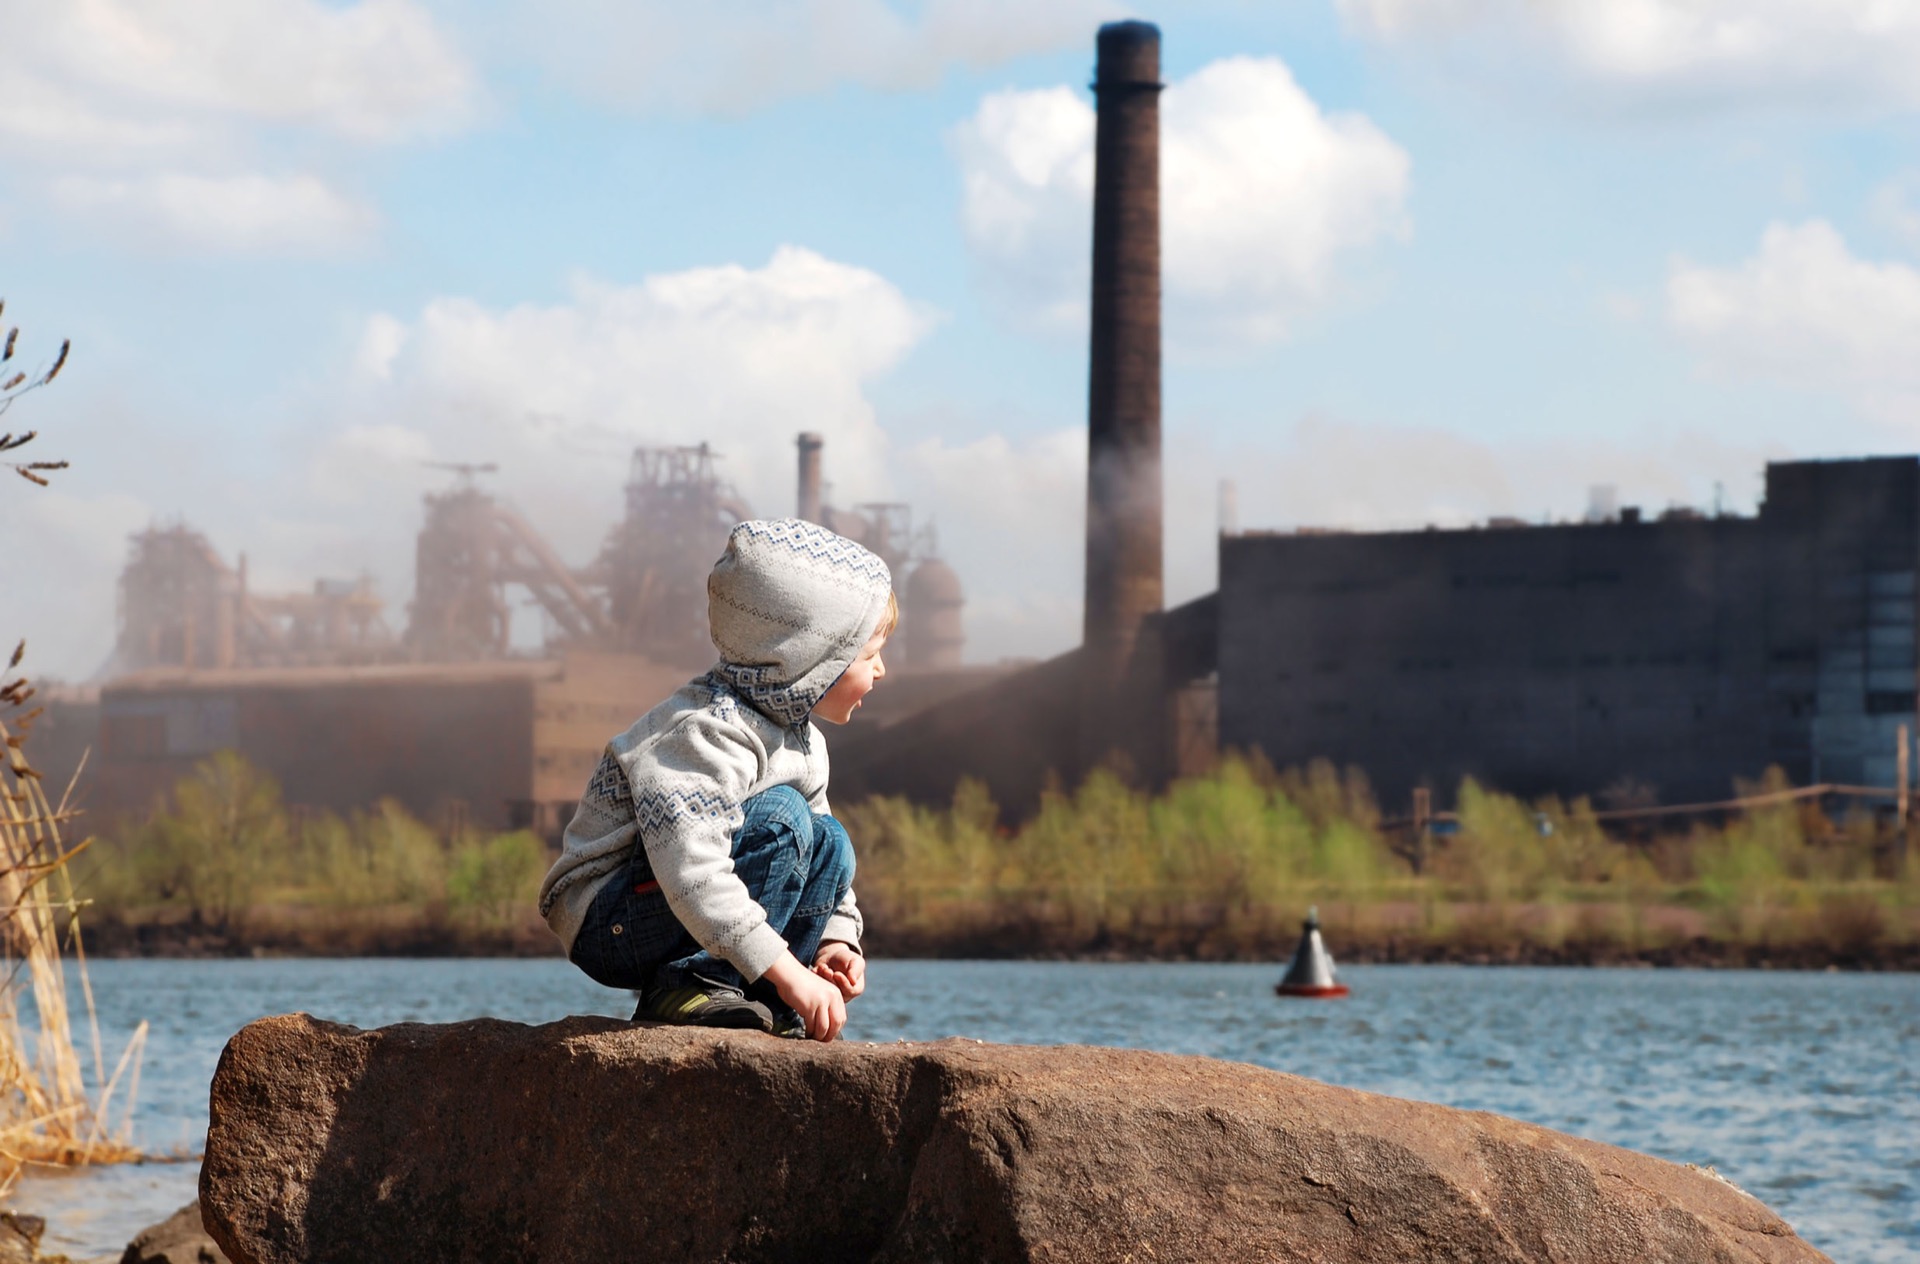 La pollution atmosphérique tue. L'OMS revoit ses critères d'évaluation des polluants à la hausse afin d'éviter des millions de morts. © Soloviova Liudmyla, Adobe Stock